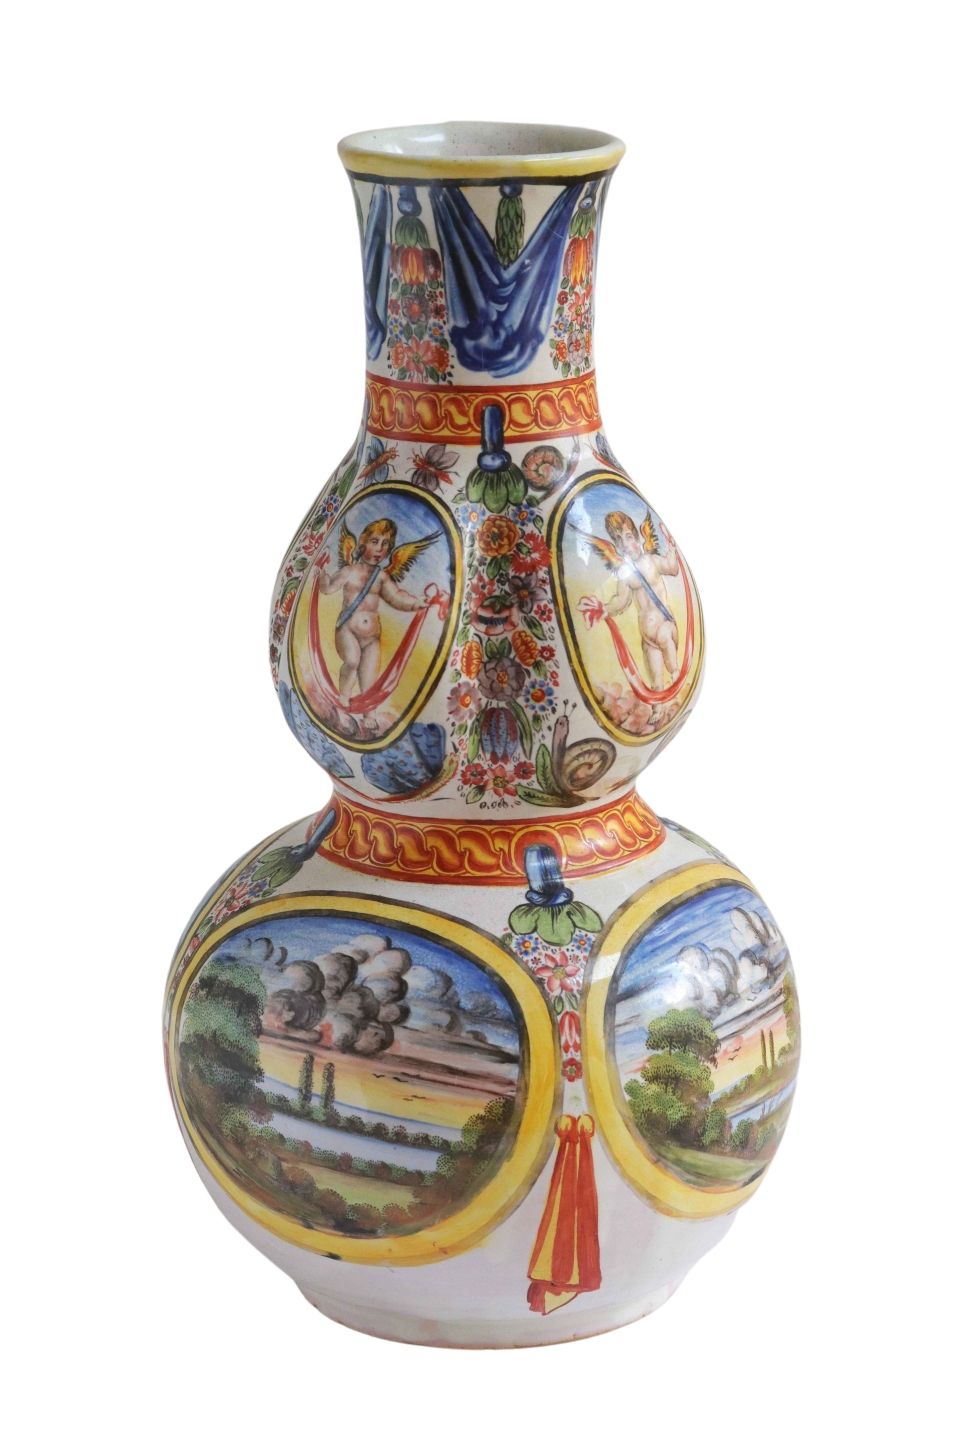 hausmaler-vase-fayence-engel-landschaft-sueddeutsch-1700